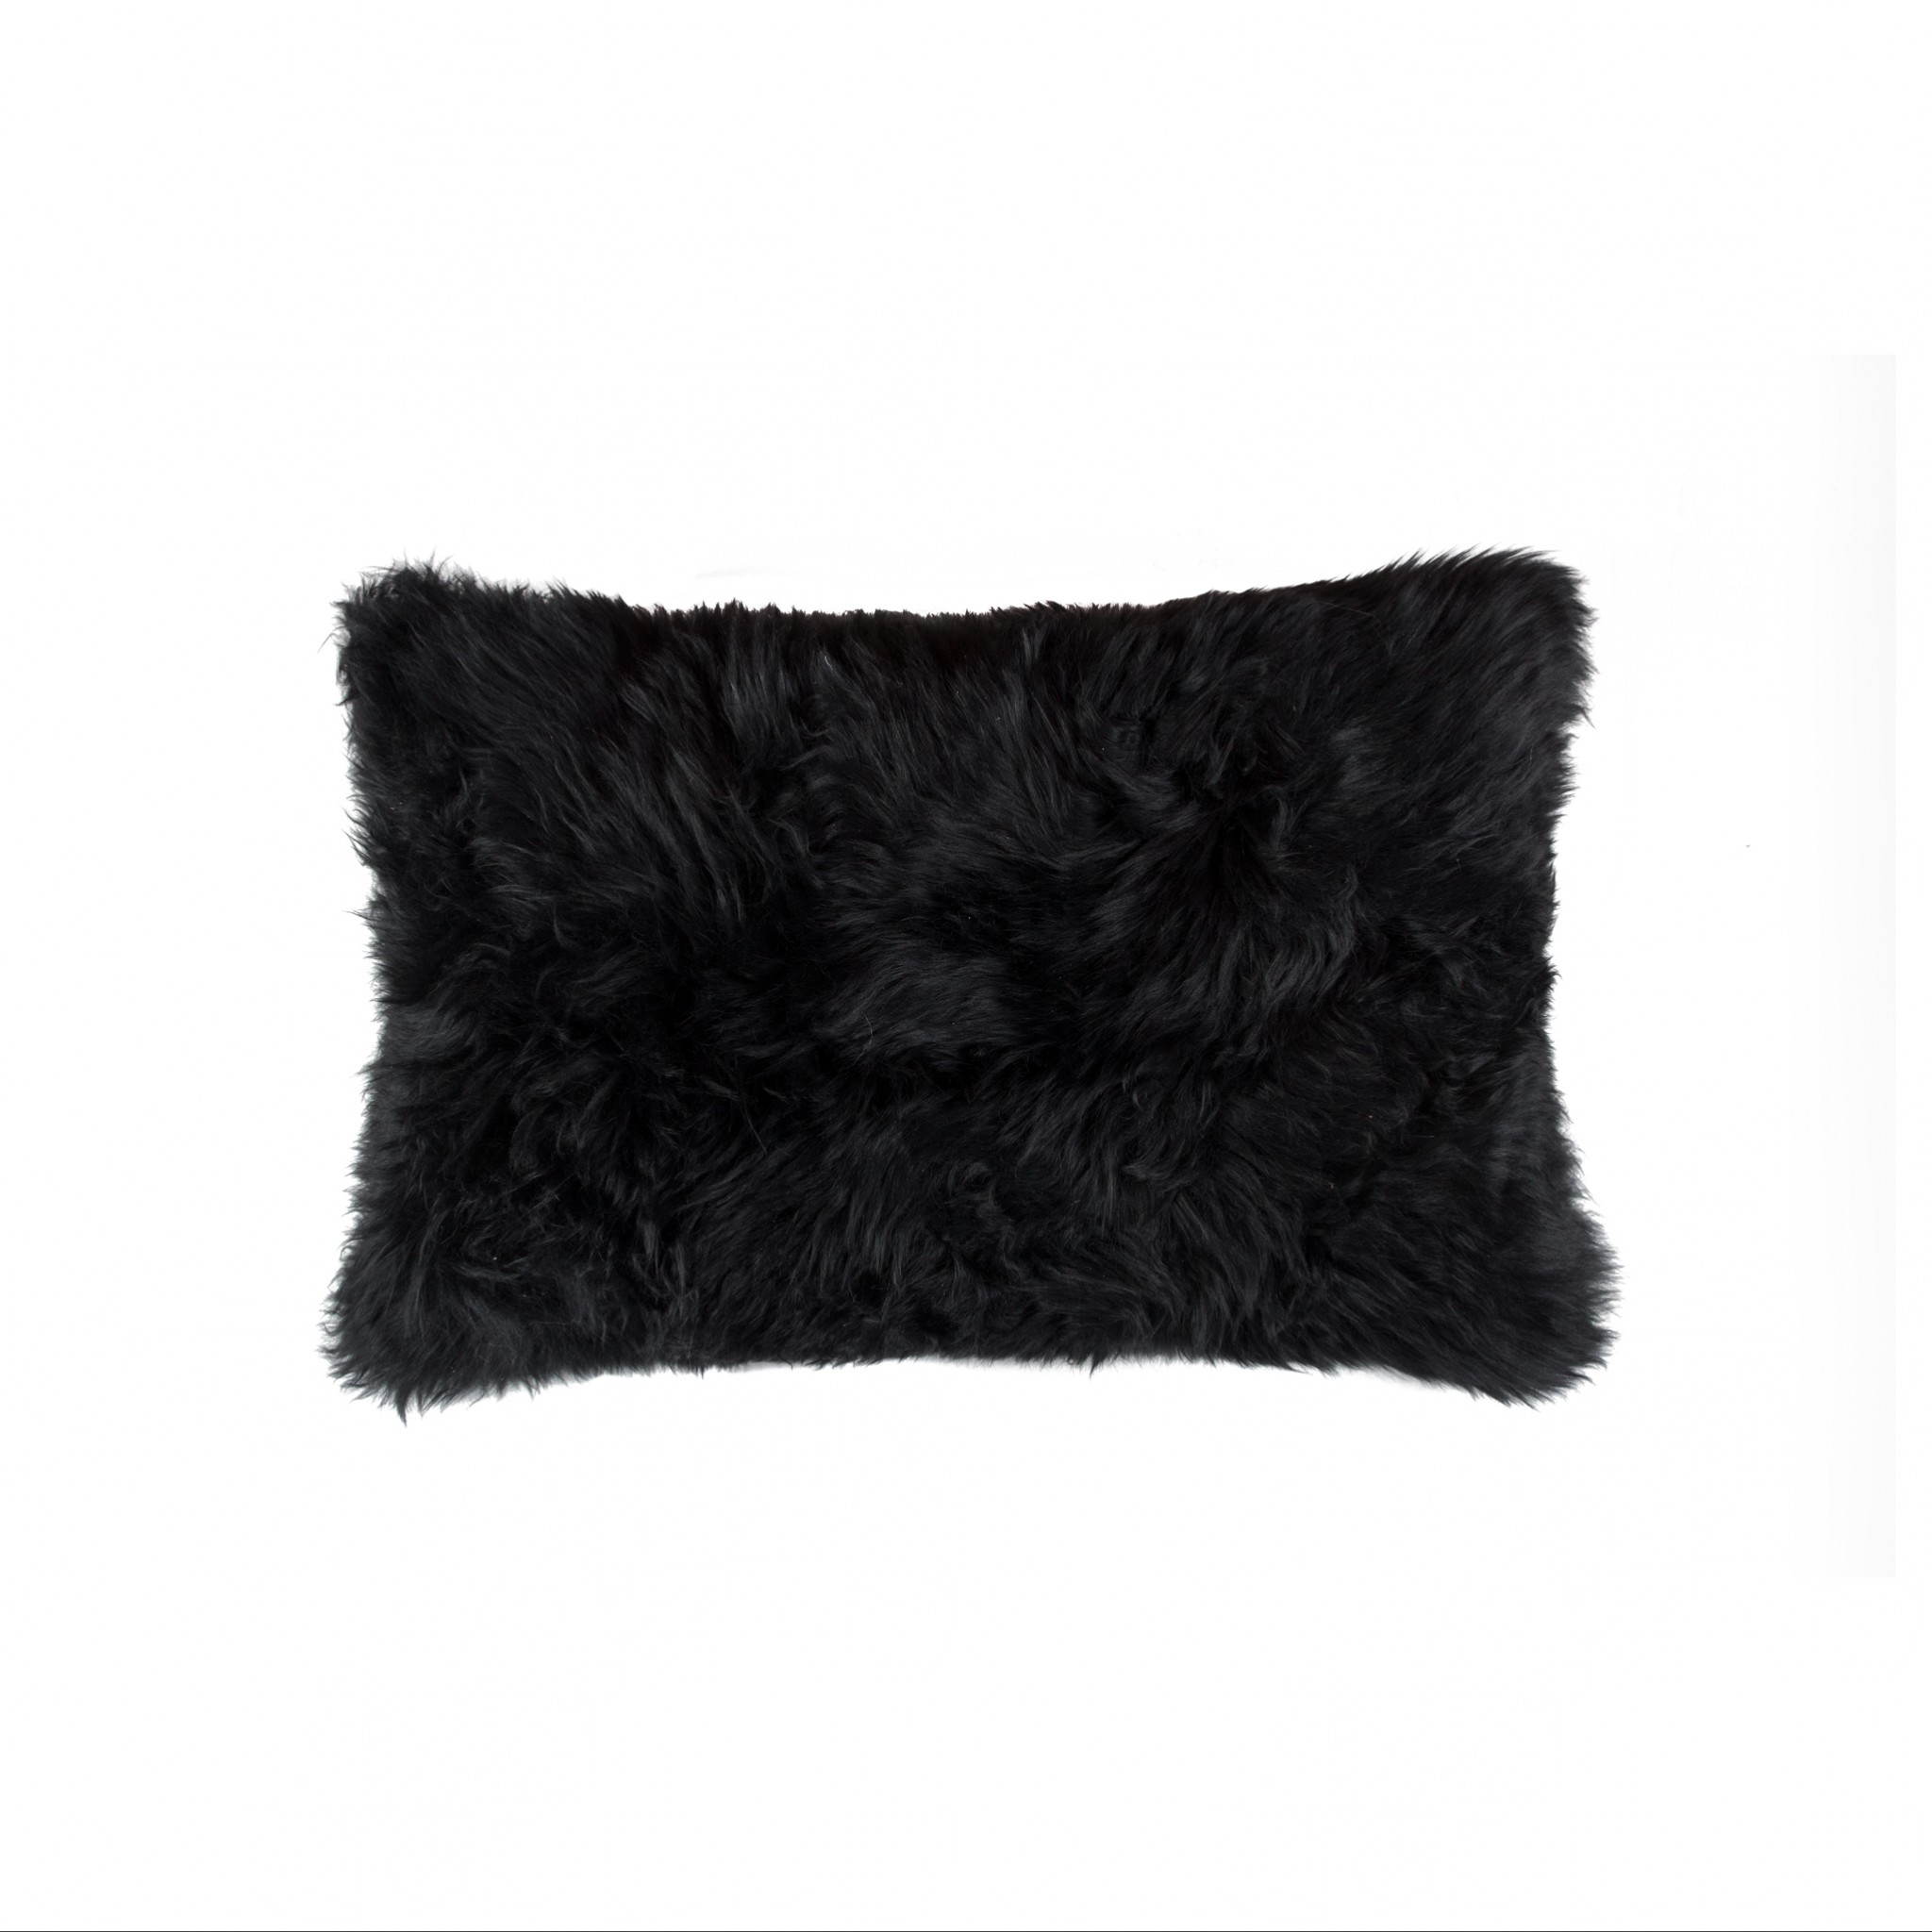 18" x 18" x 5" Modern Black New Zealand Sheepskin - Pillow